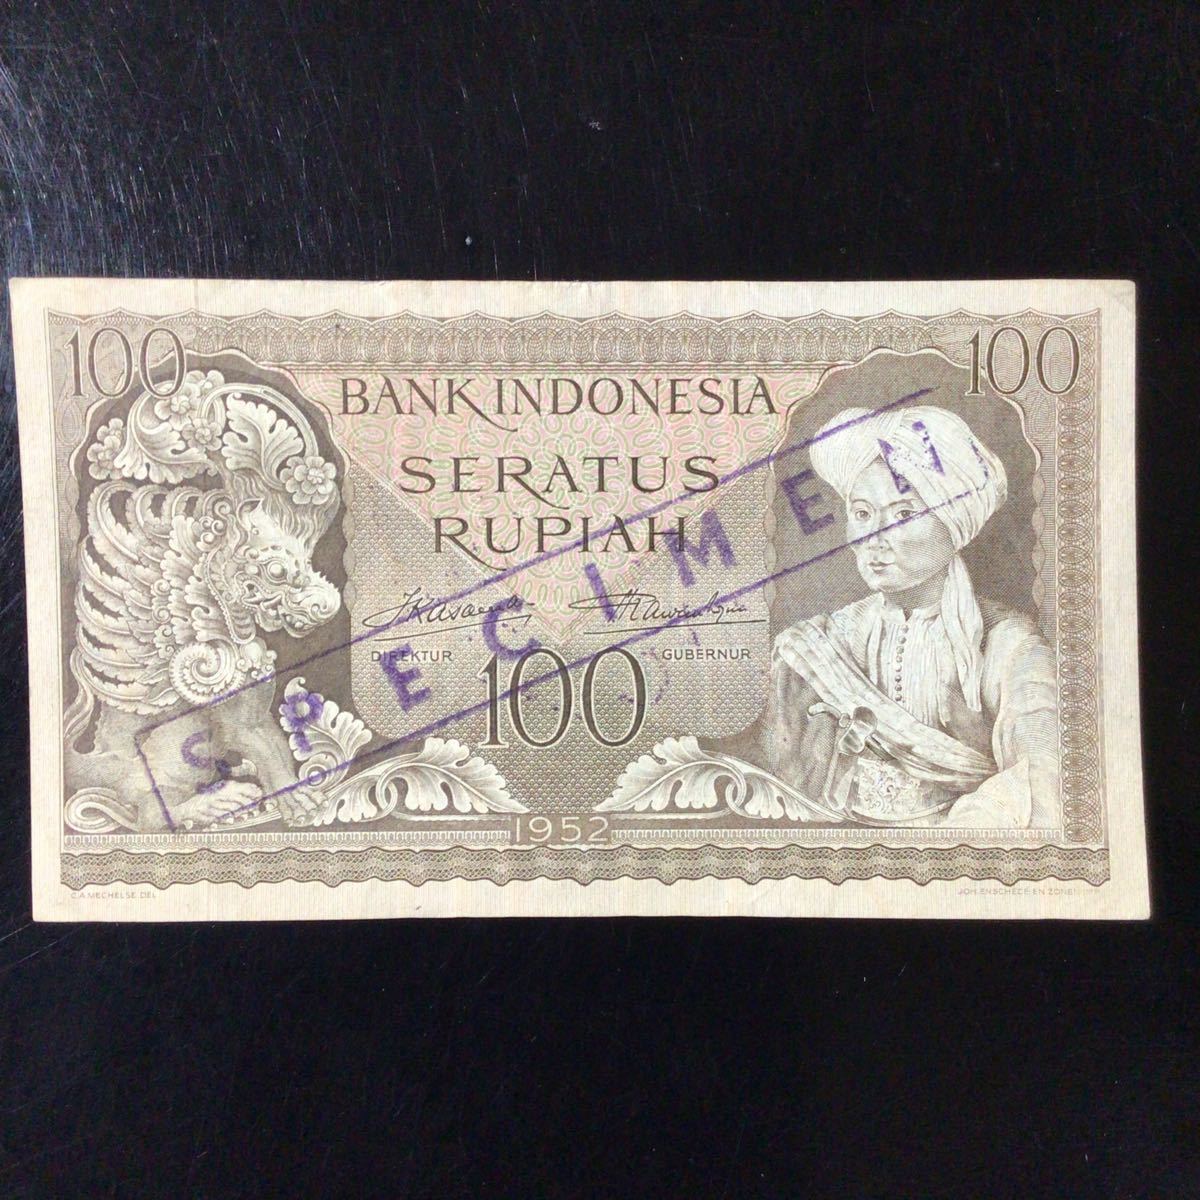 World Paper Money INDONESIA 100 Rupiah《Specimen》【1952】